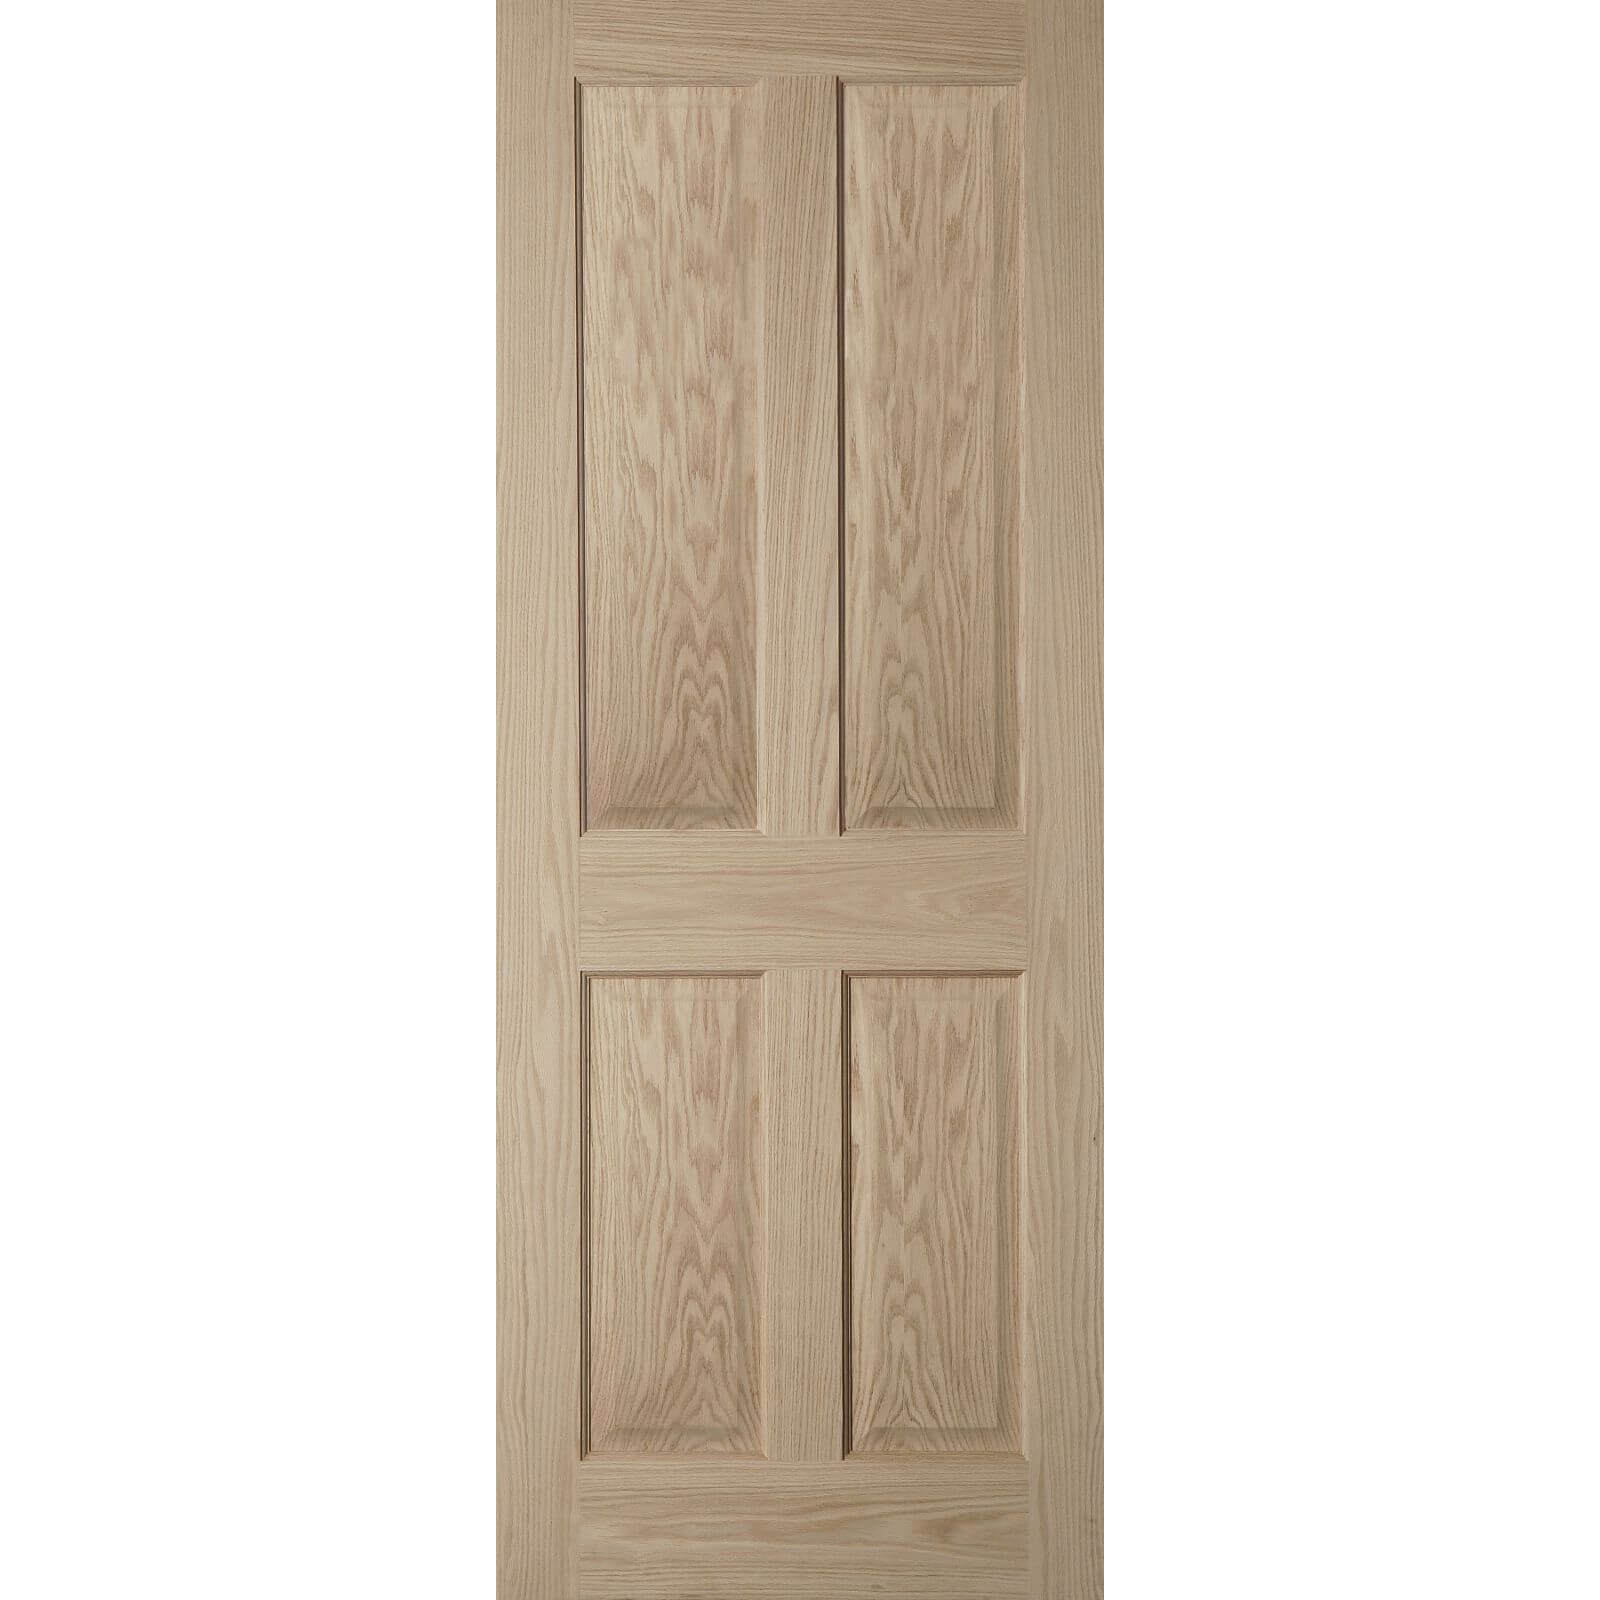 4 Panel Oak Veneer Internal Door - 726mm Wide